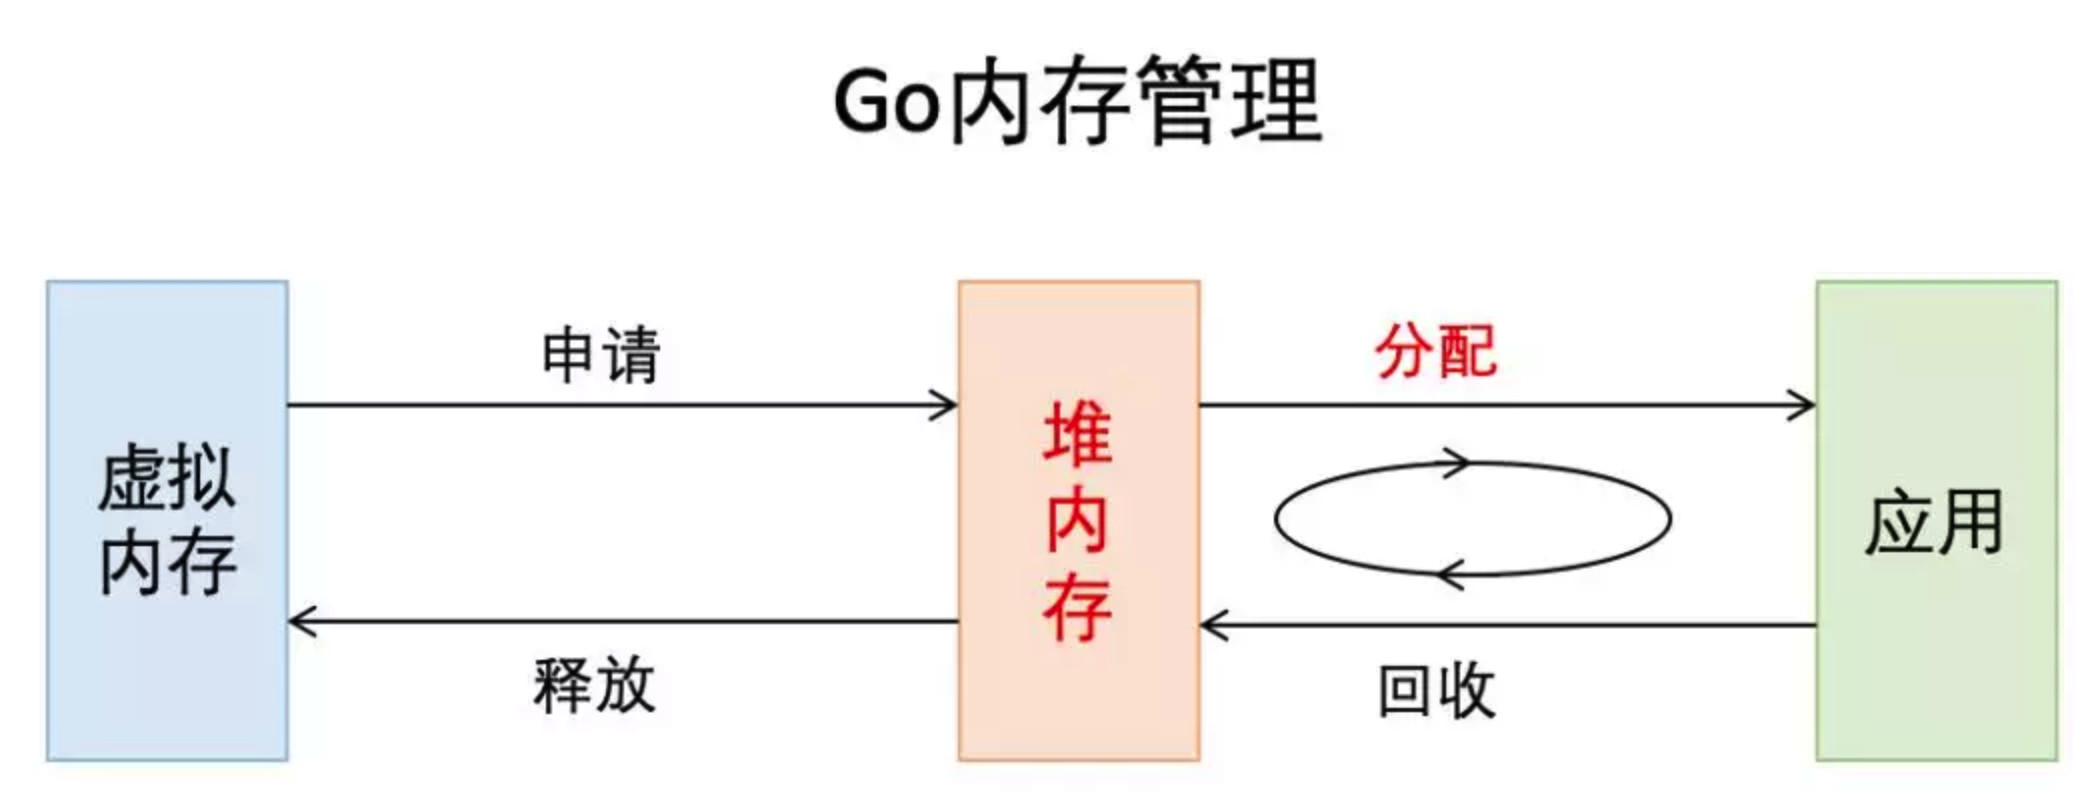 Go内存管理 - 图1